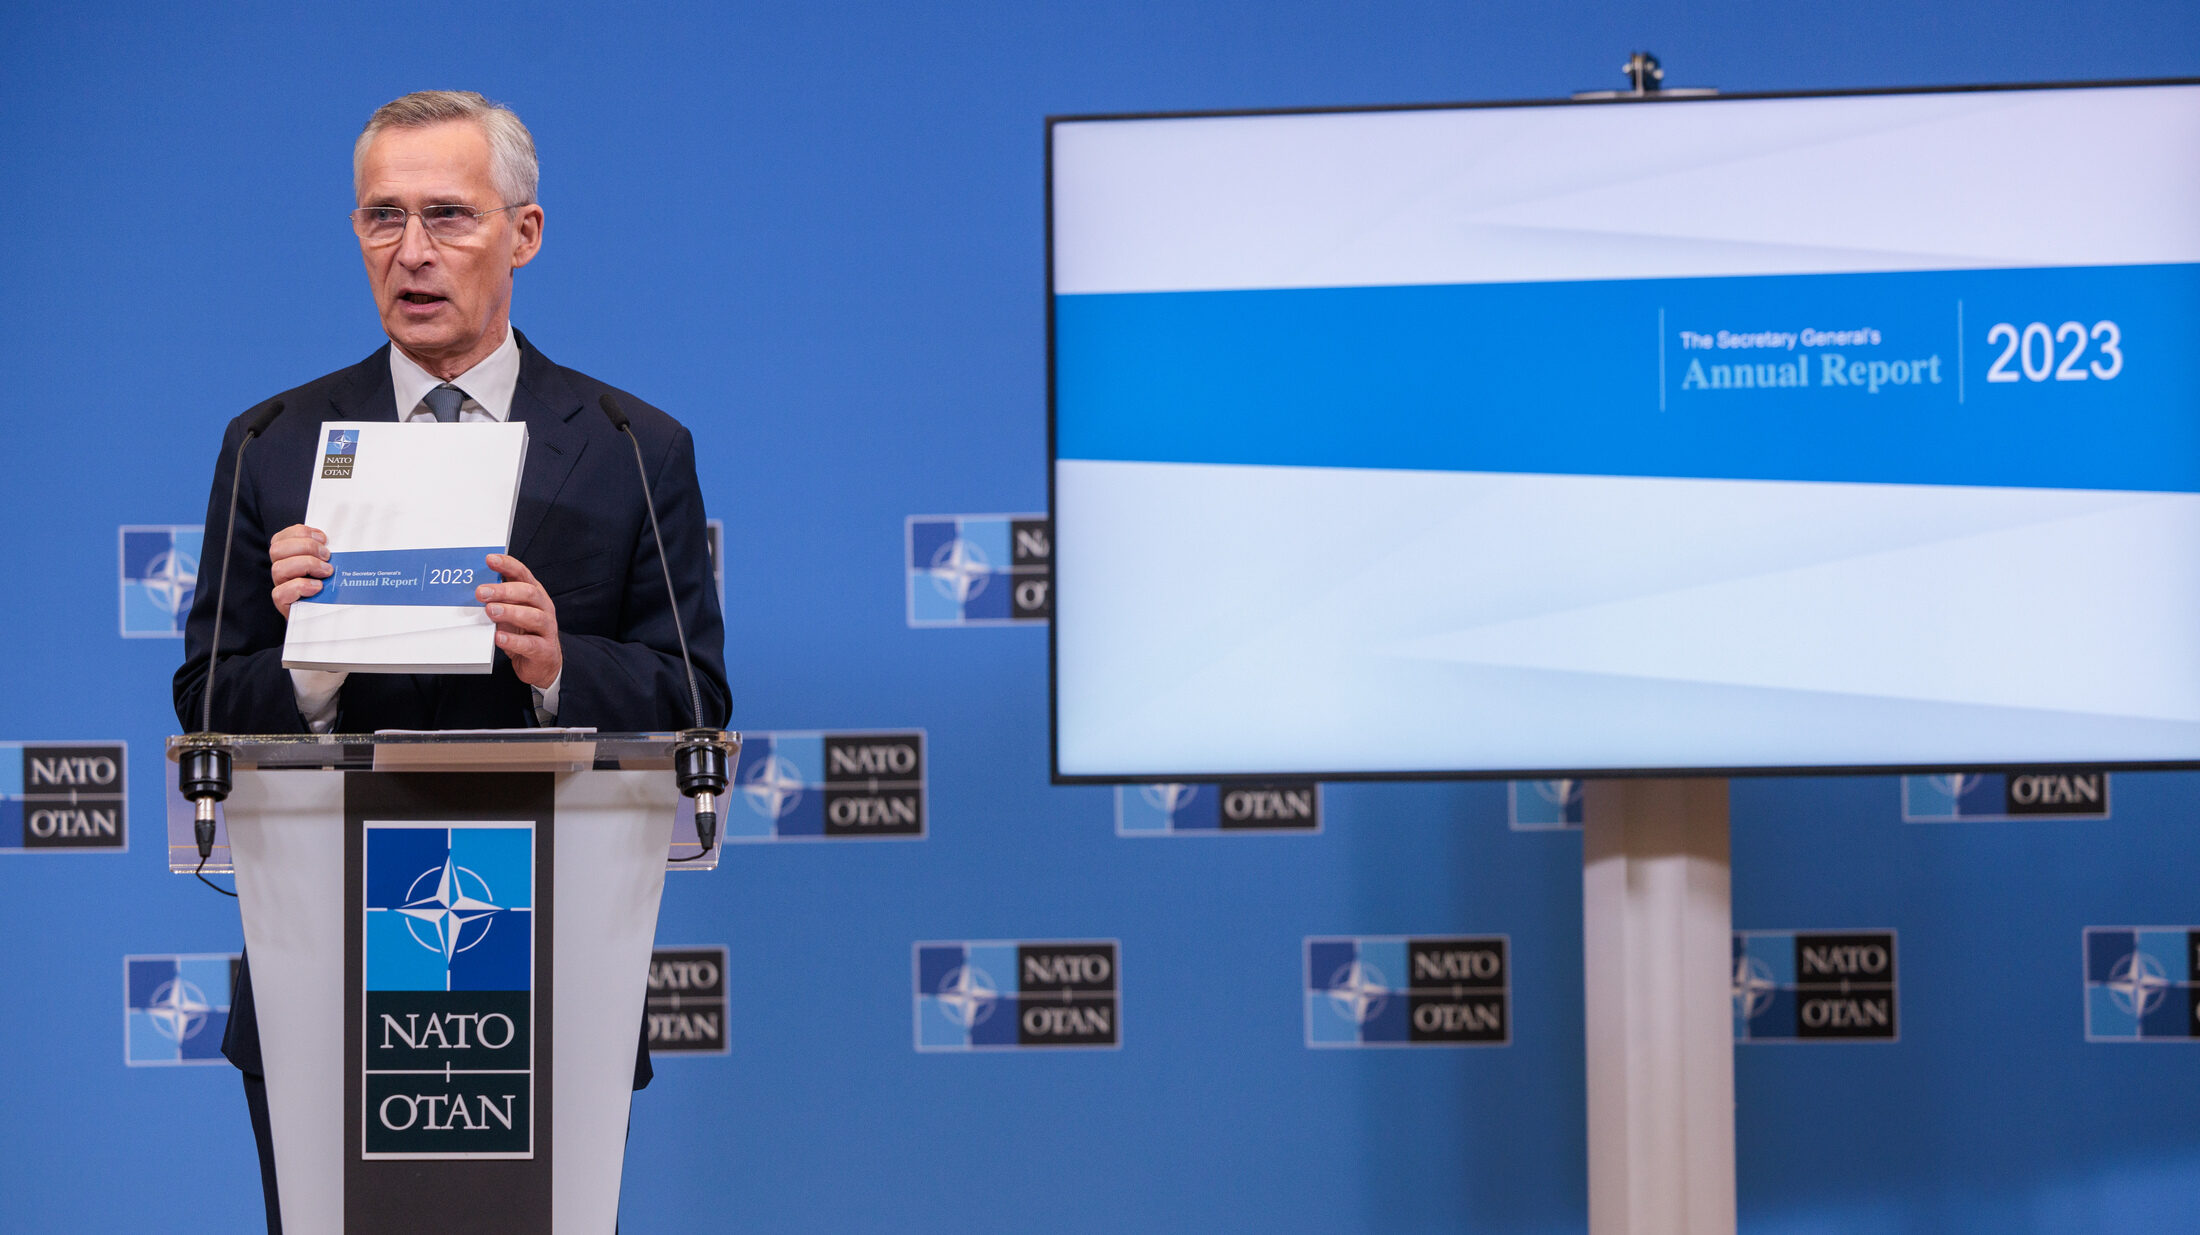 NATO Secretary General releases Annual Report for 2023